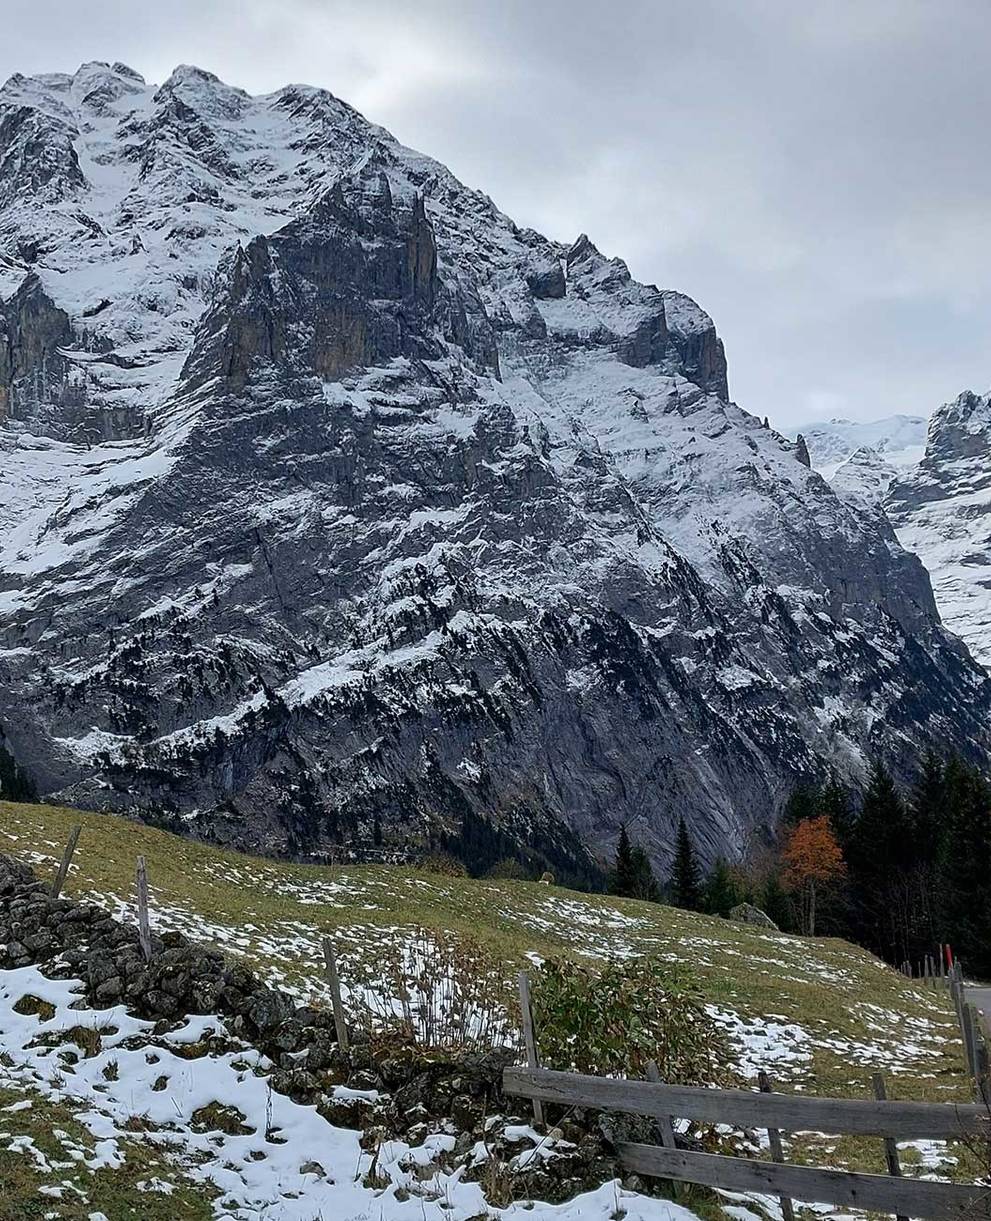 Vacances en faveur de la nature, Grindelwald, Oberland bernois, chantier mur de pierres sèches